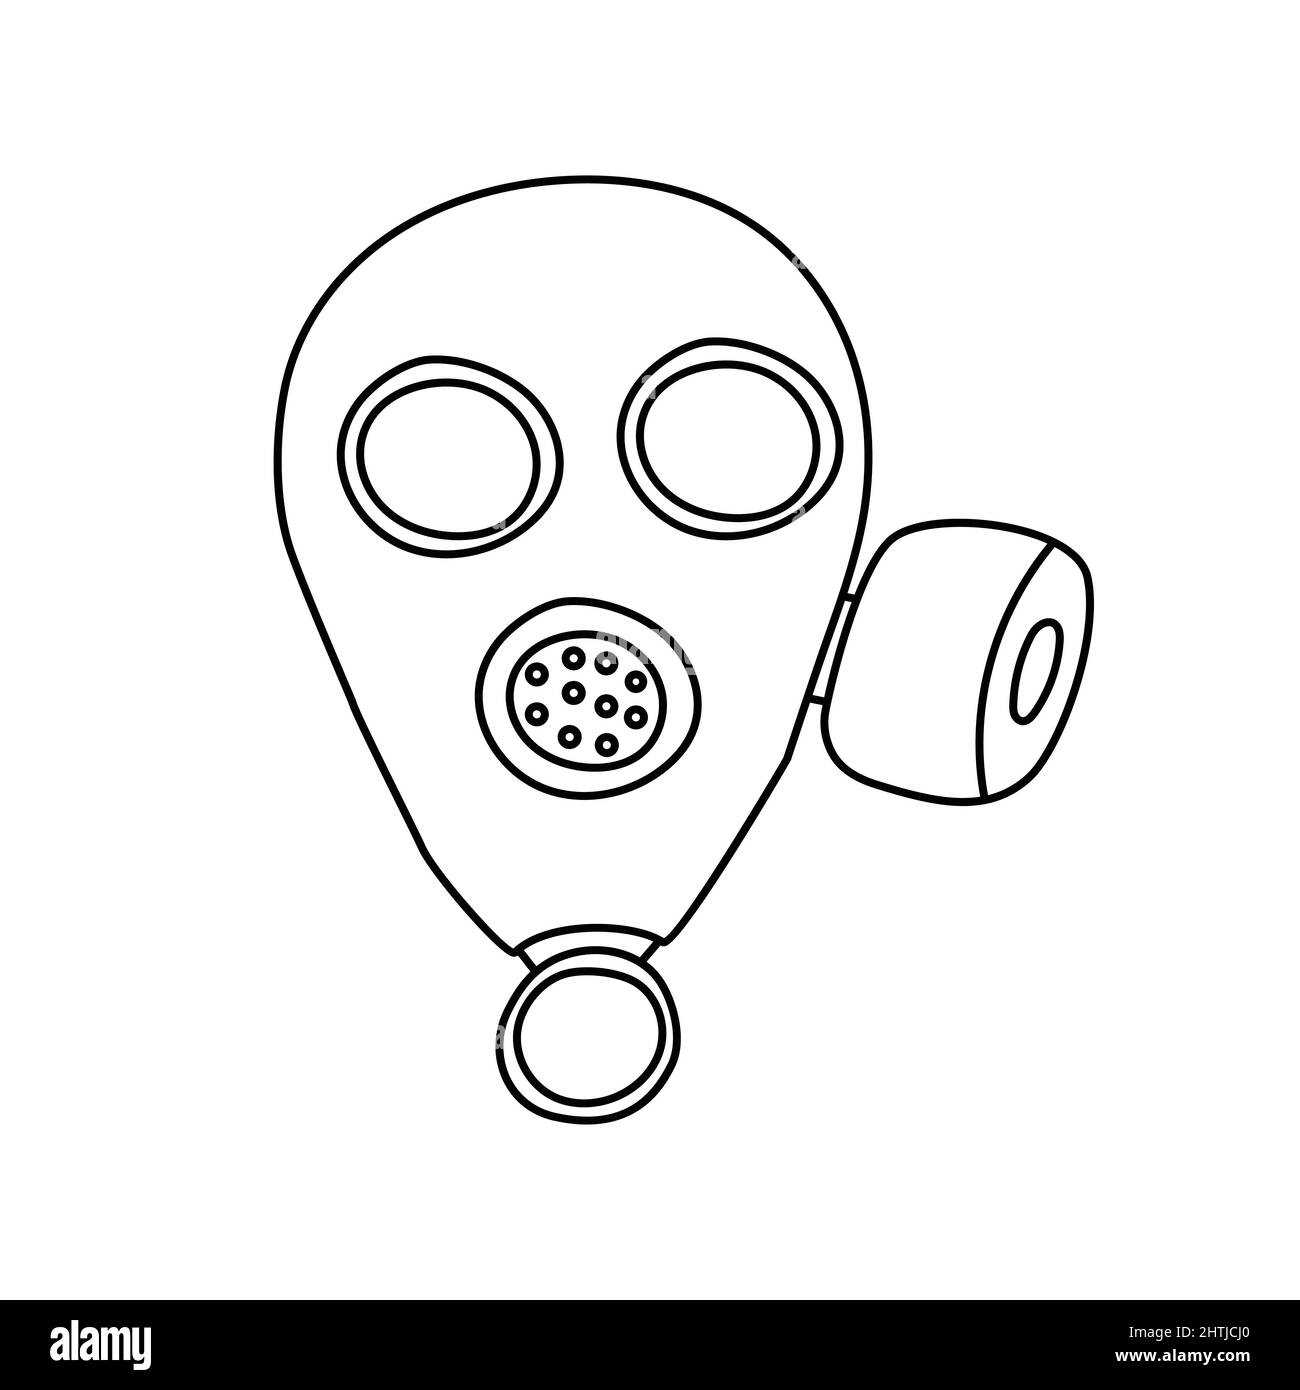 Disegno di una maschera di gas. Un mezzo militare di protezione contro gas velenosi, armi biologiche, chimiche e radioattive. Illustrazione Vettoriale